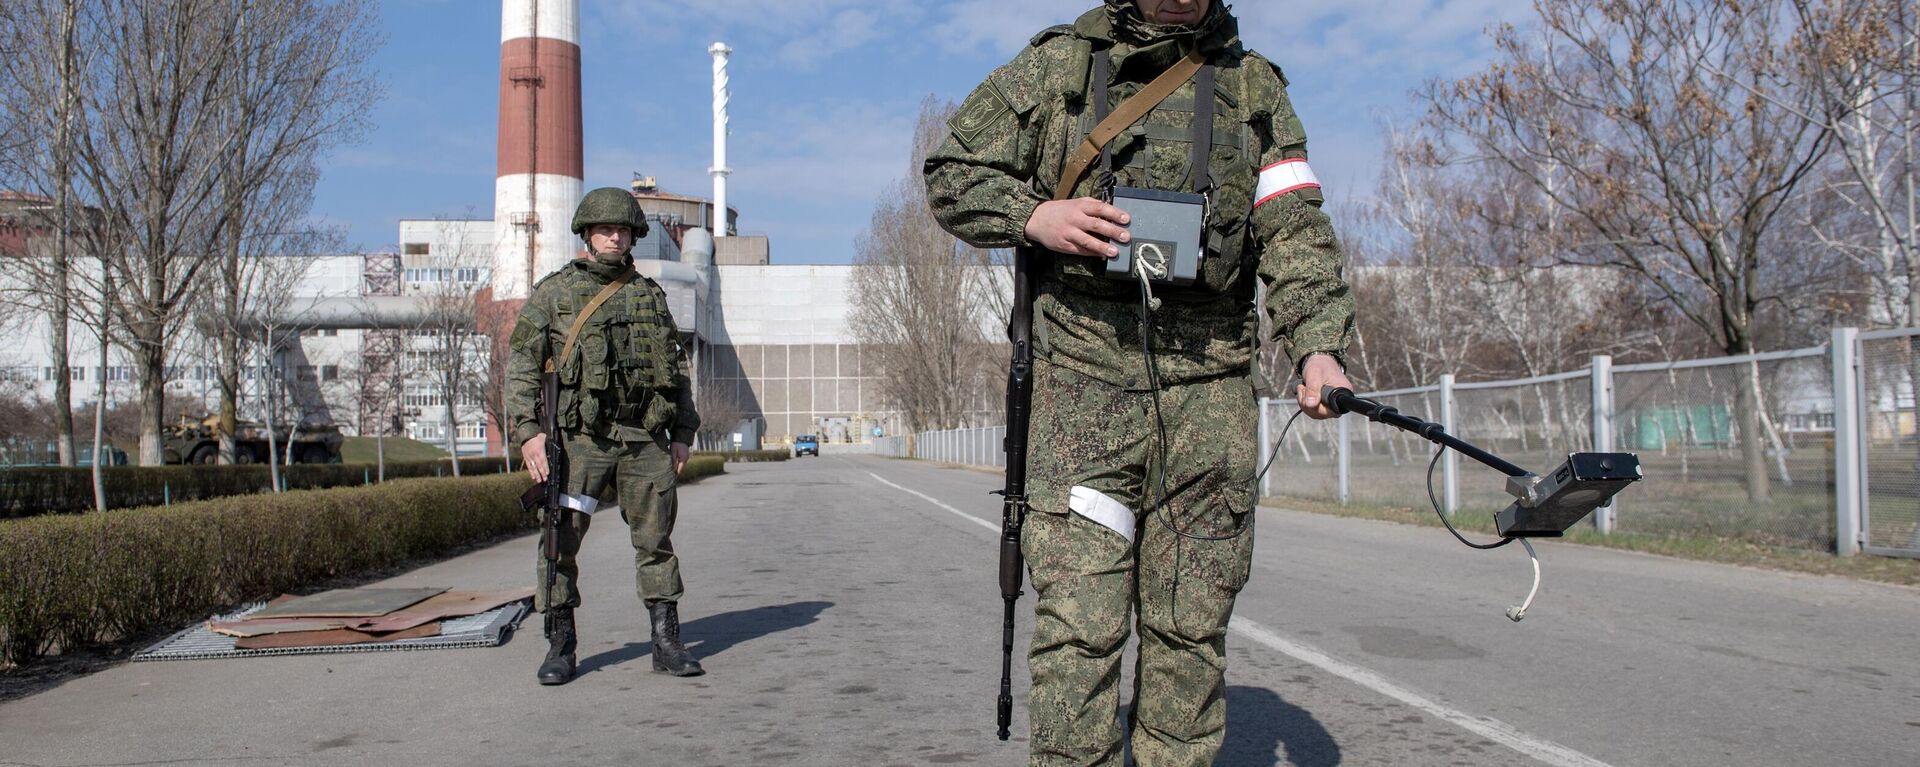 Militares da Rússia verificam radiação na central nuclear de Zaporozhie, foto publicada em 5 de abril de 2022 - Sputnik Brasil, 1920, 29.05.2022